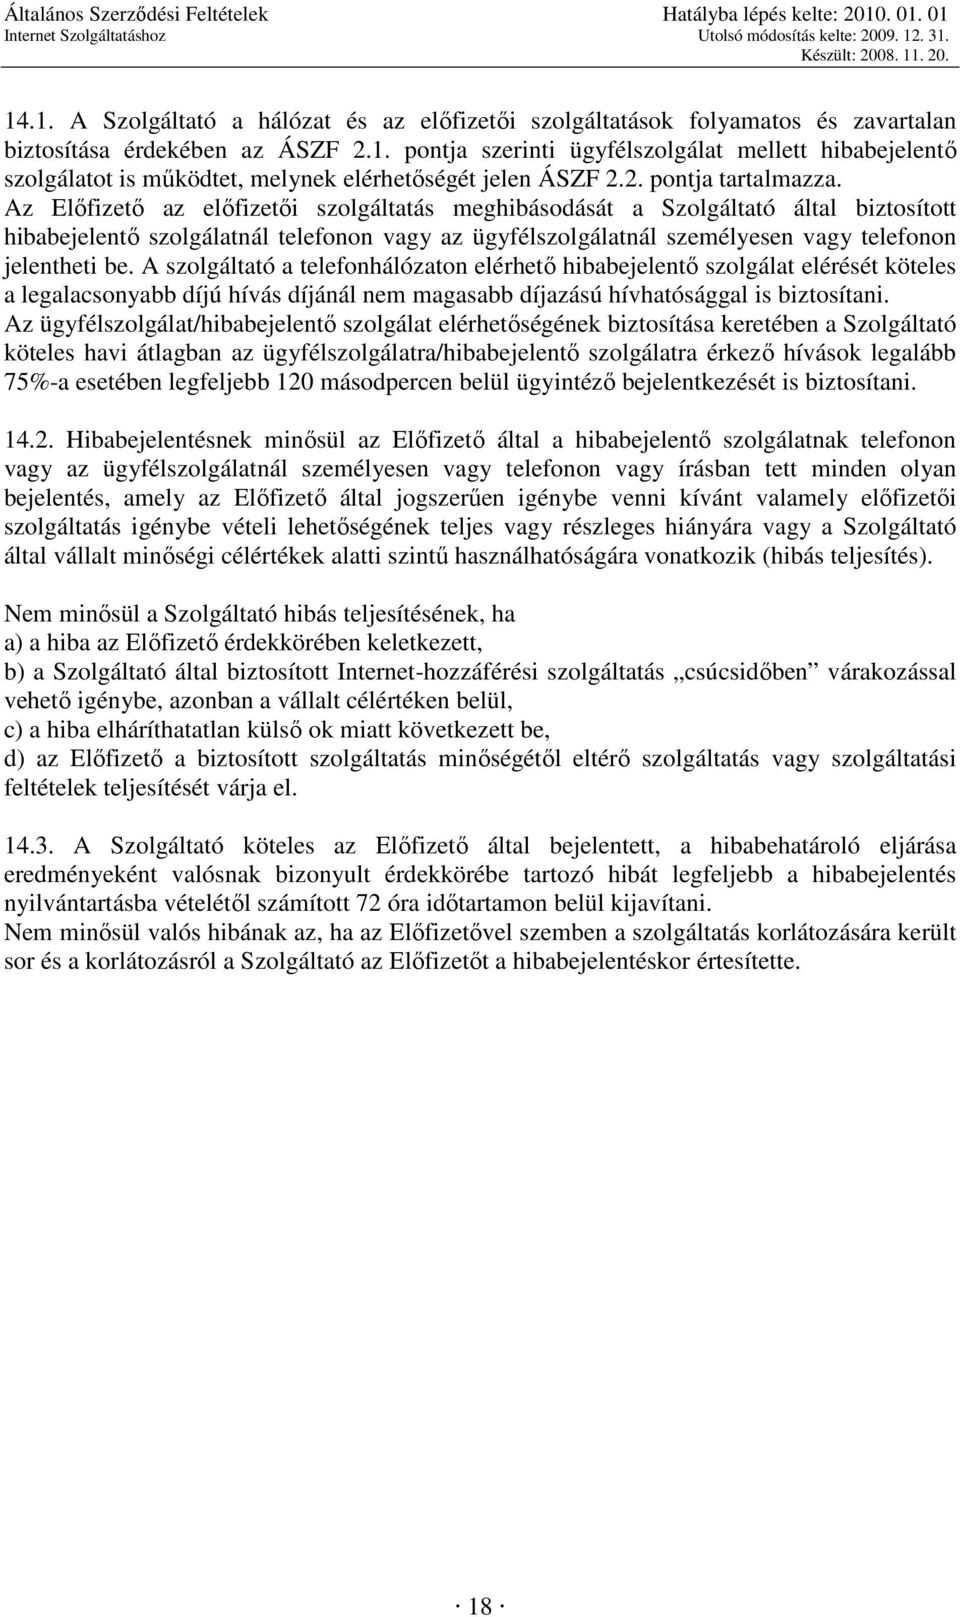 Az Elıfizetı az elıfizetıi szolgáltatás meghibásodását a Szolgáltató által biztosított hibabejelentı szolgálatnál telefonon vagy az ügyfélszolgálatnál személyesen vagy telefonon jelentheti be.